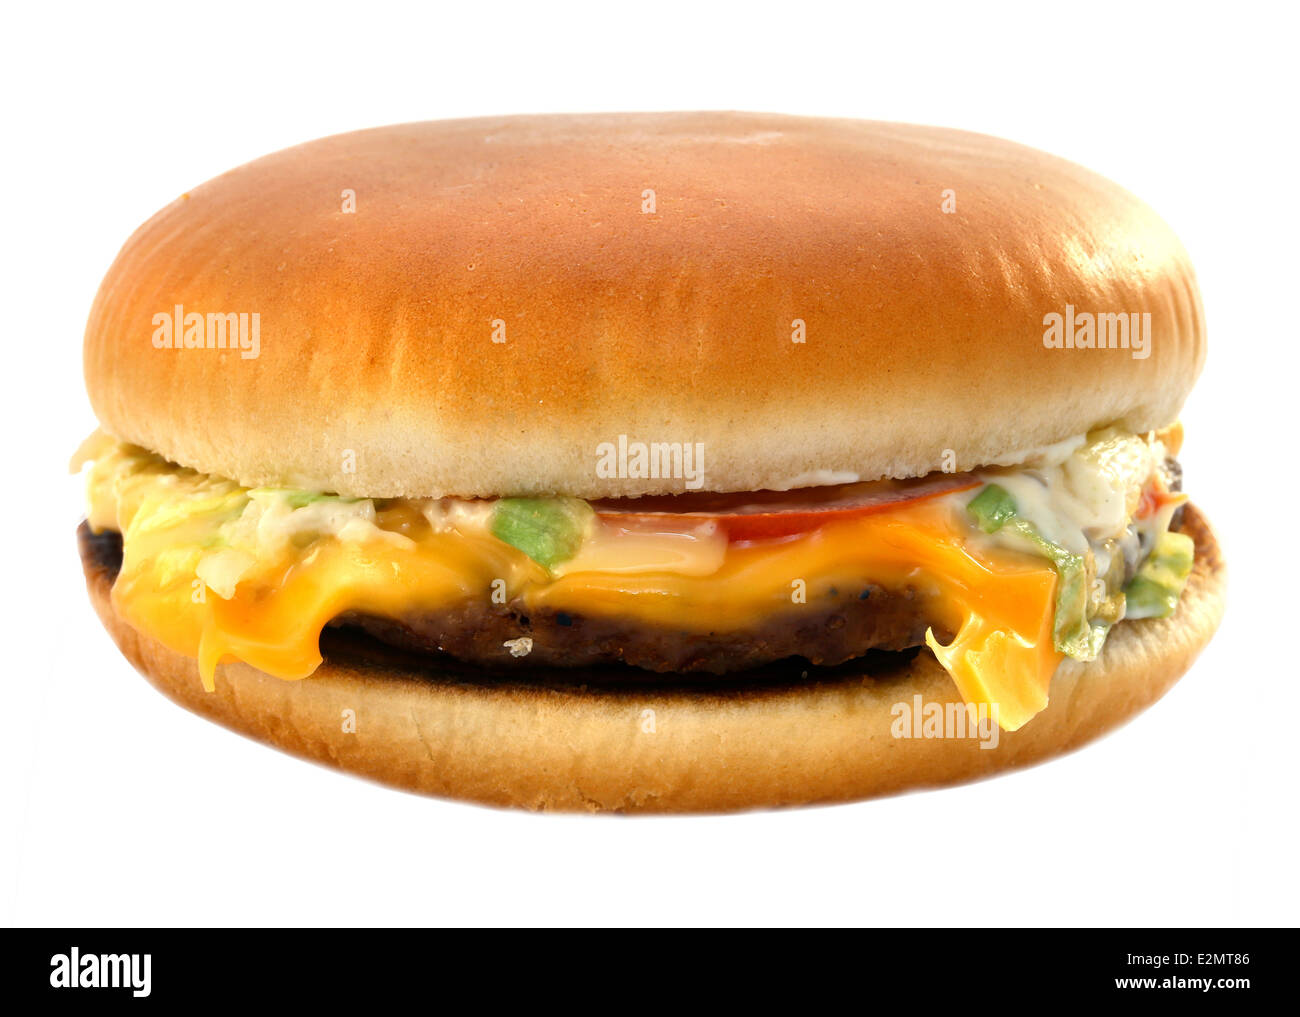 Tasty big tasty cheeseburger isolated on white background Stock Photo